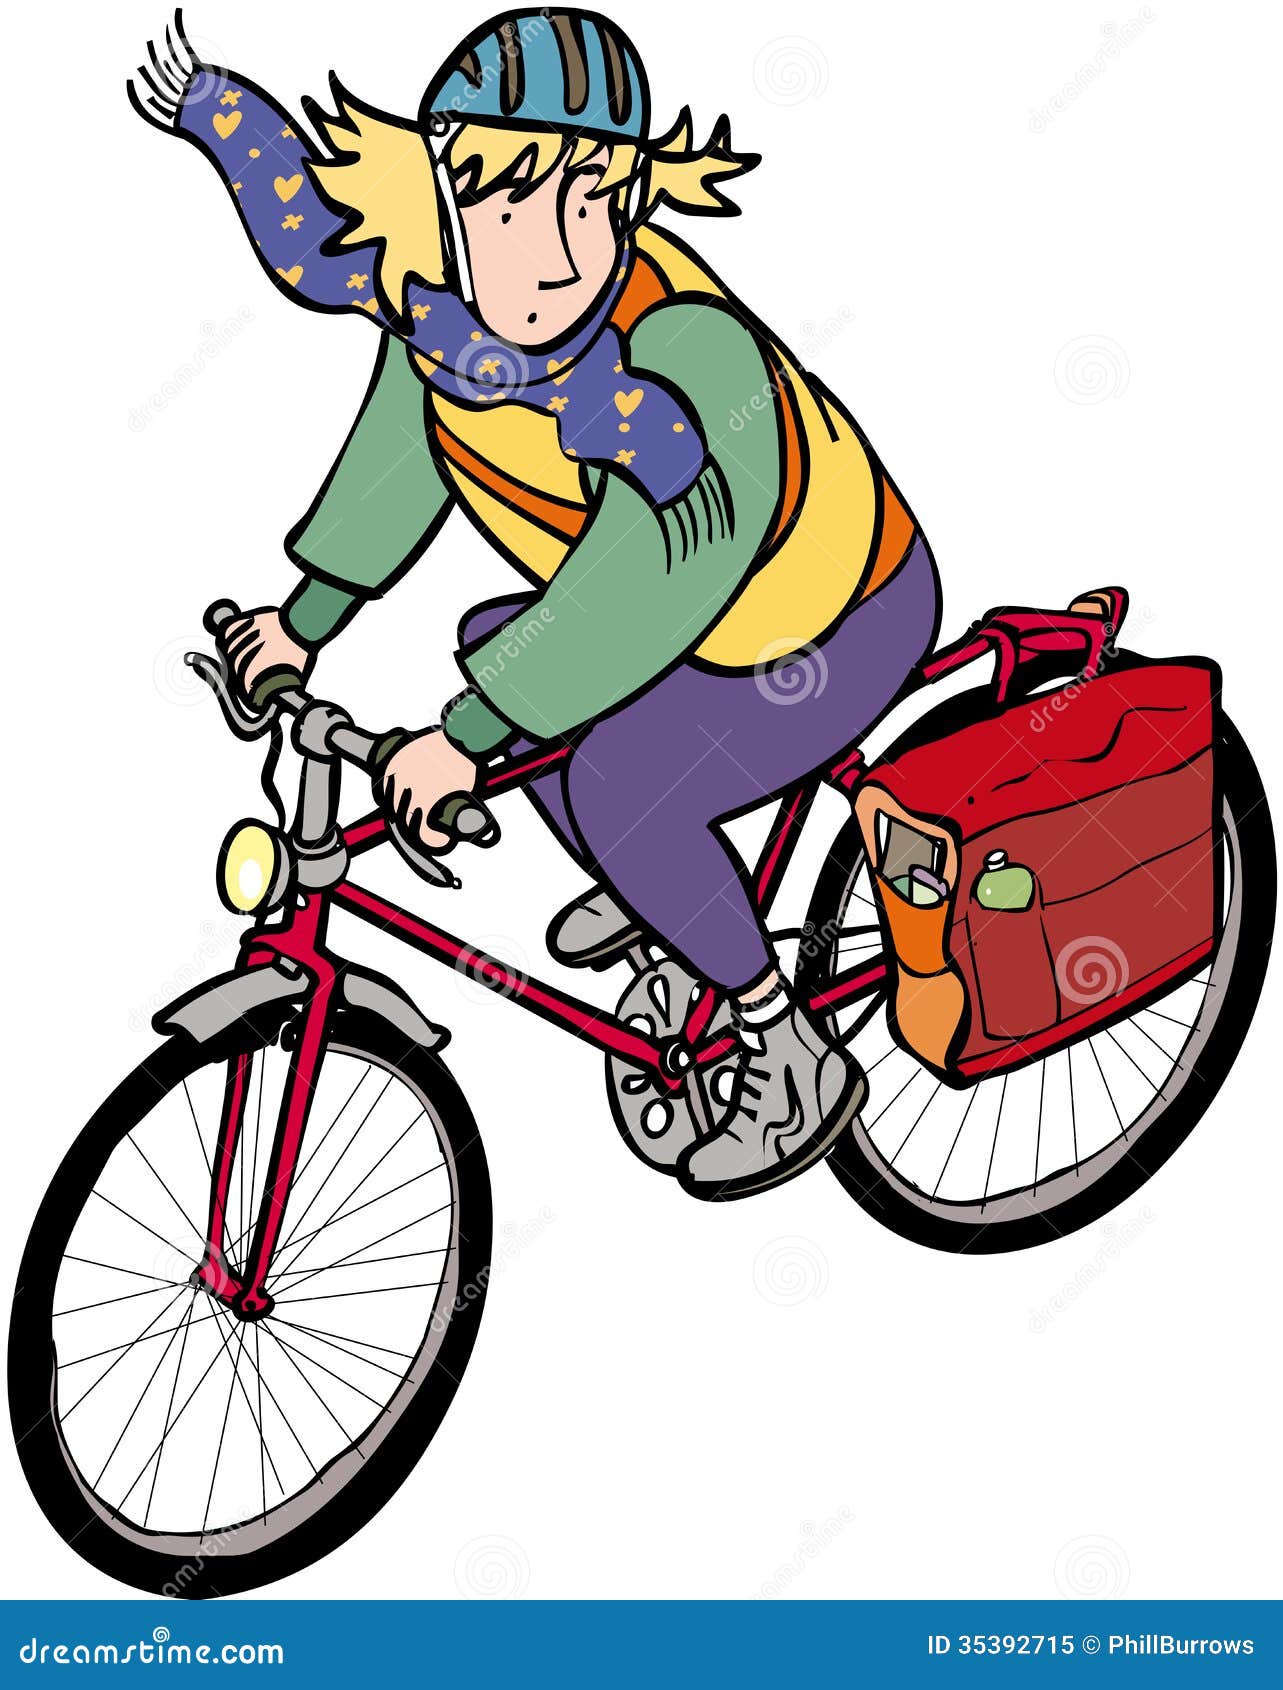 girl on bike clipart - photo #27